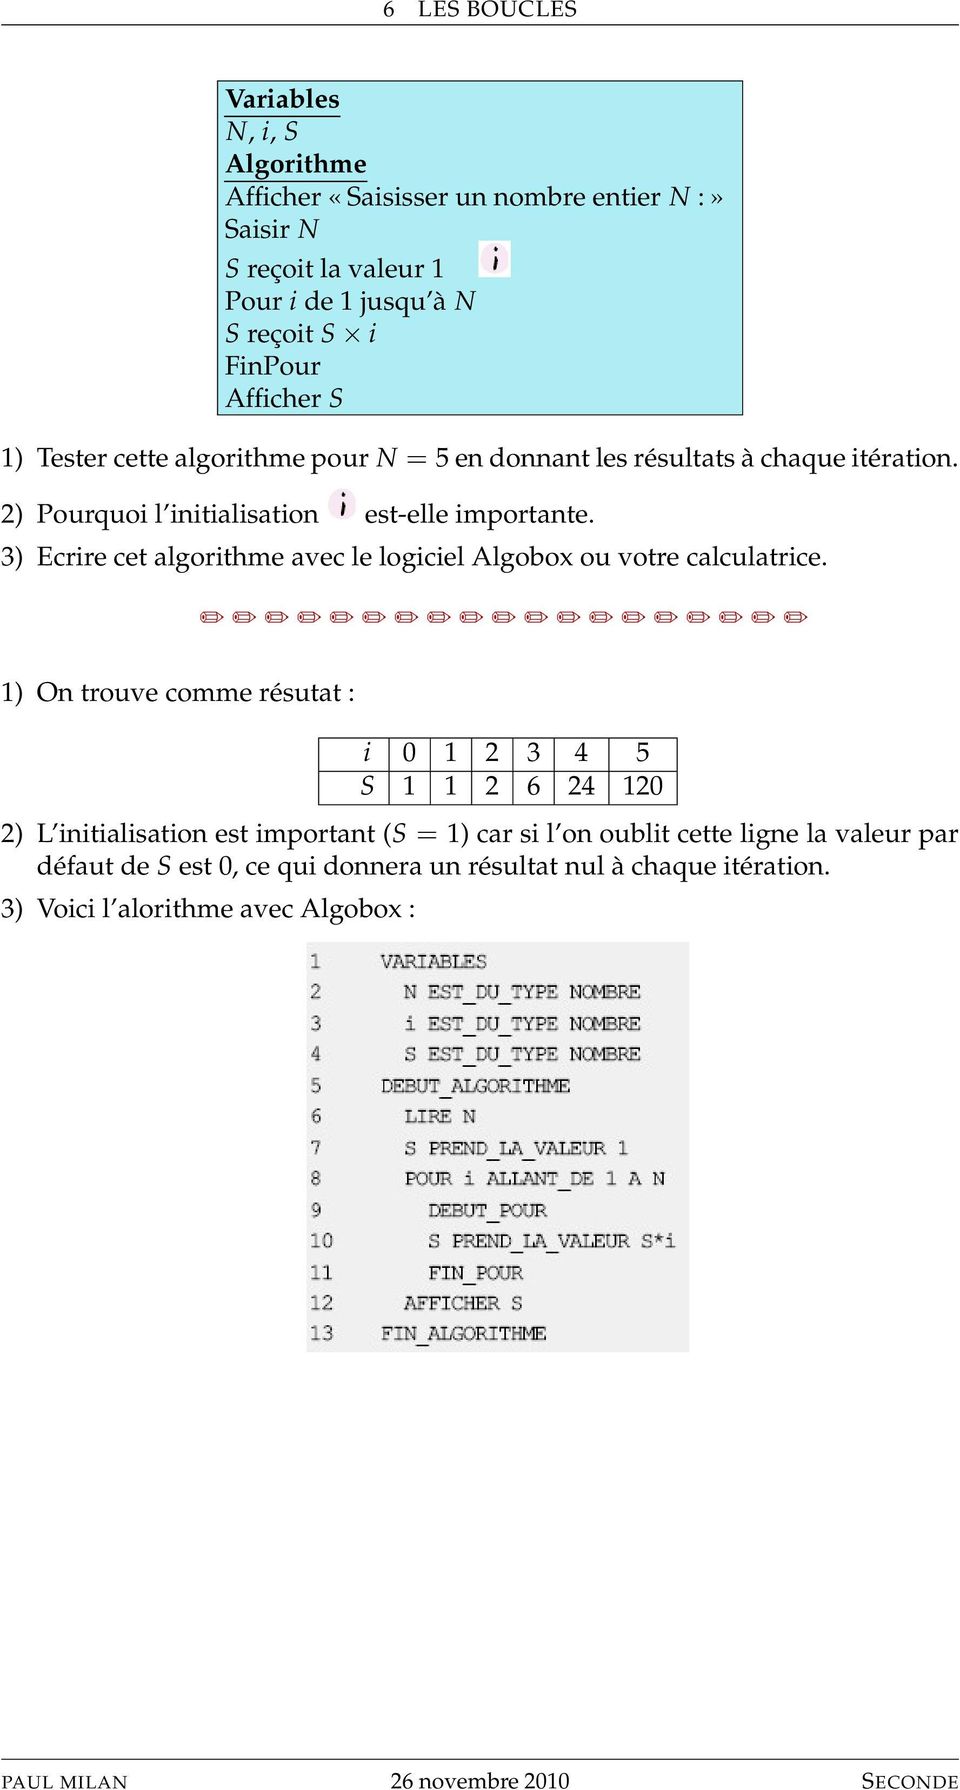 3) Ecrire cet algorithme avec le logiciel Algobox ou votre calculatrice.